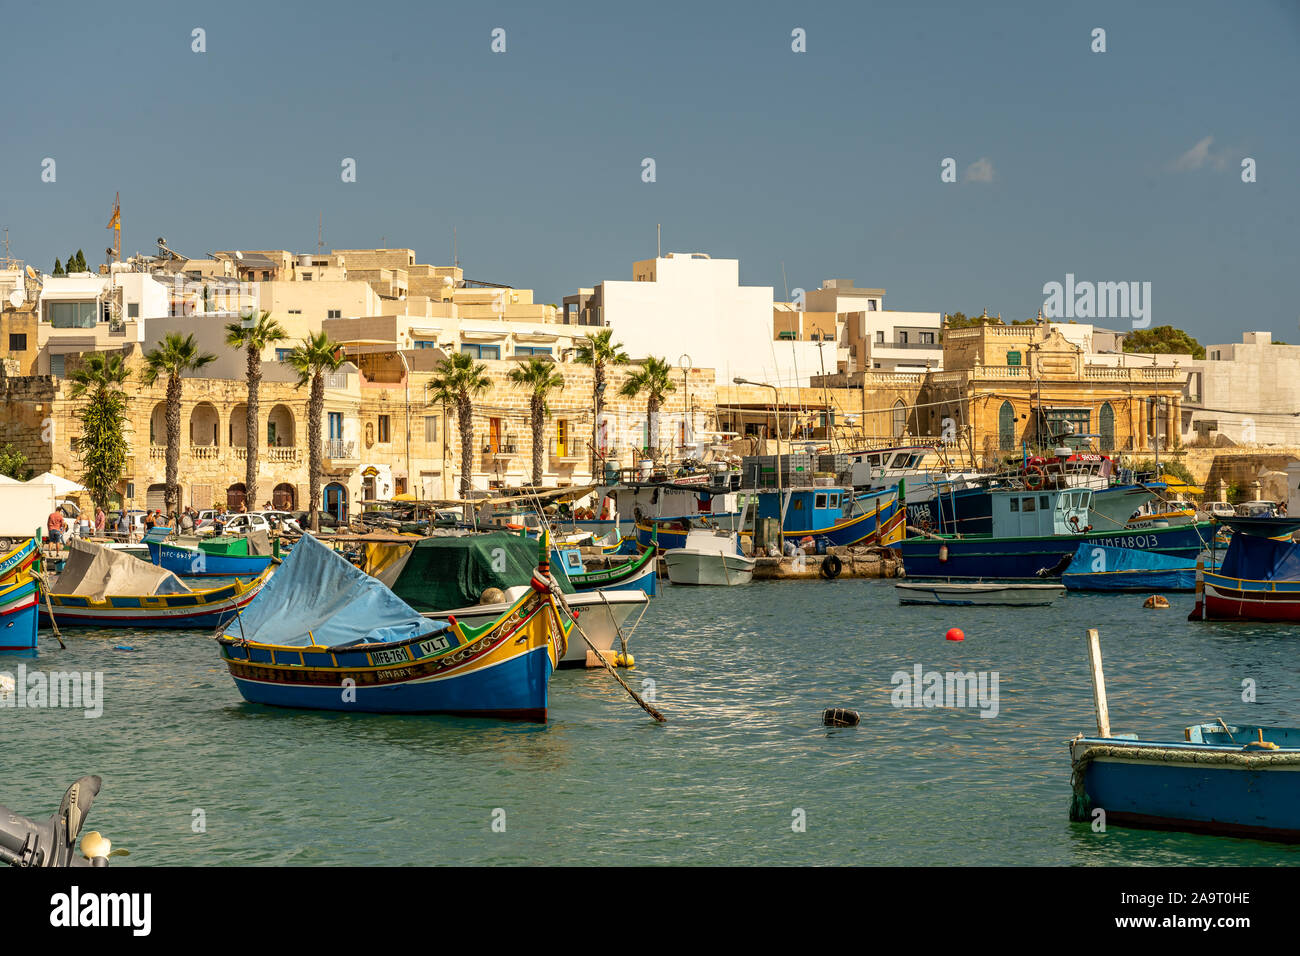 view of the harbor of marsaxlokk on malta Stock Photo